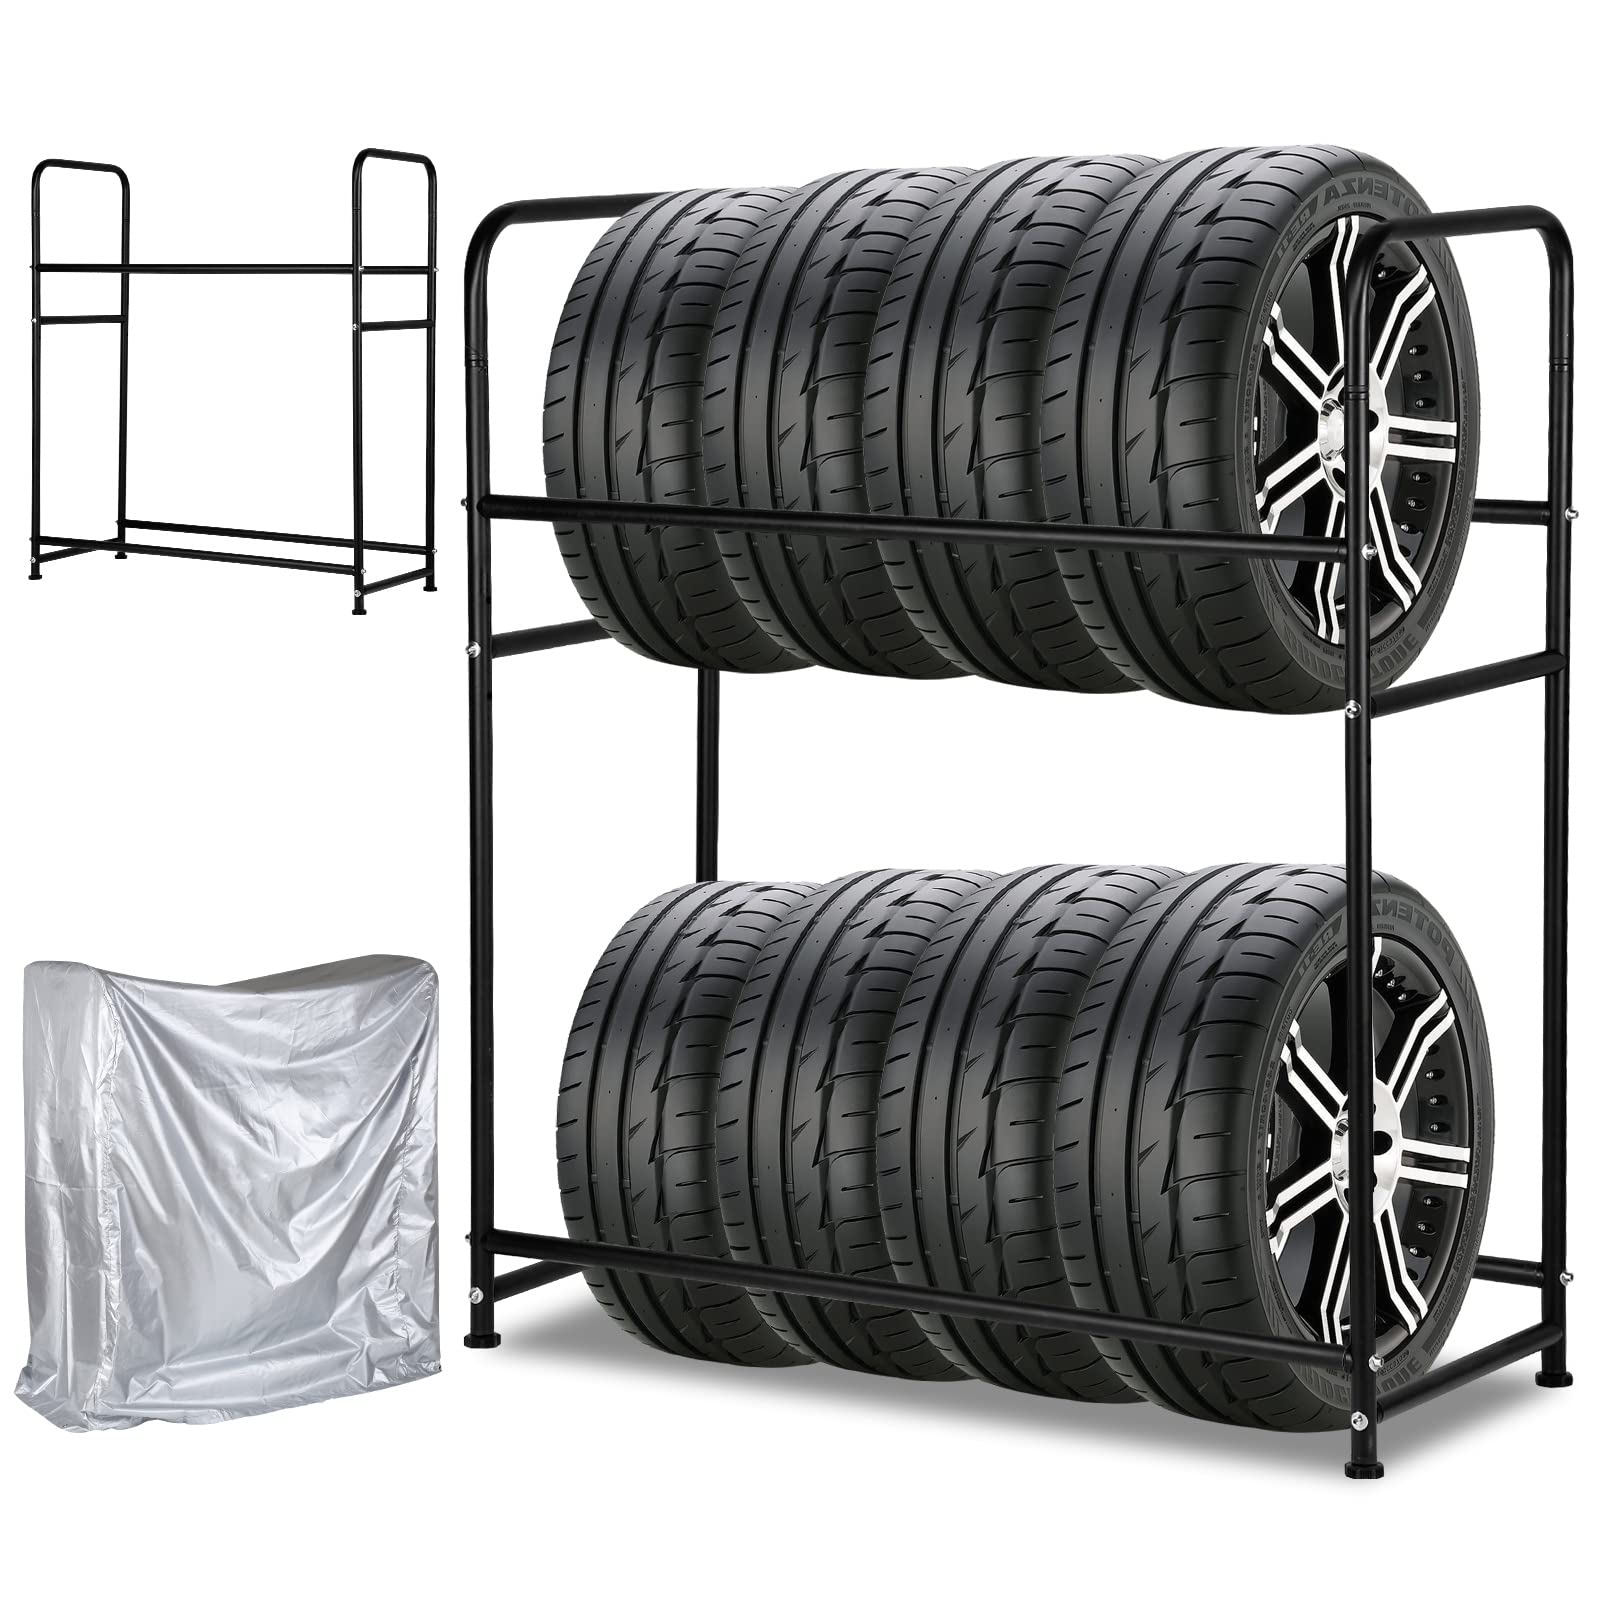 Ansobea Reifenregal für 8 Reifen Lagerregal | HxBxT 117x107x46 cm | Ladekapazität 180KG | mit Reifenschutzhülle | bis 240 mm Reifenbreite | Höhenverstellbar Reifenständer für Platzsparende Lagerung von Ansobea